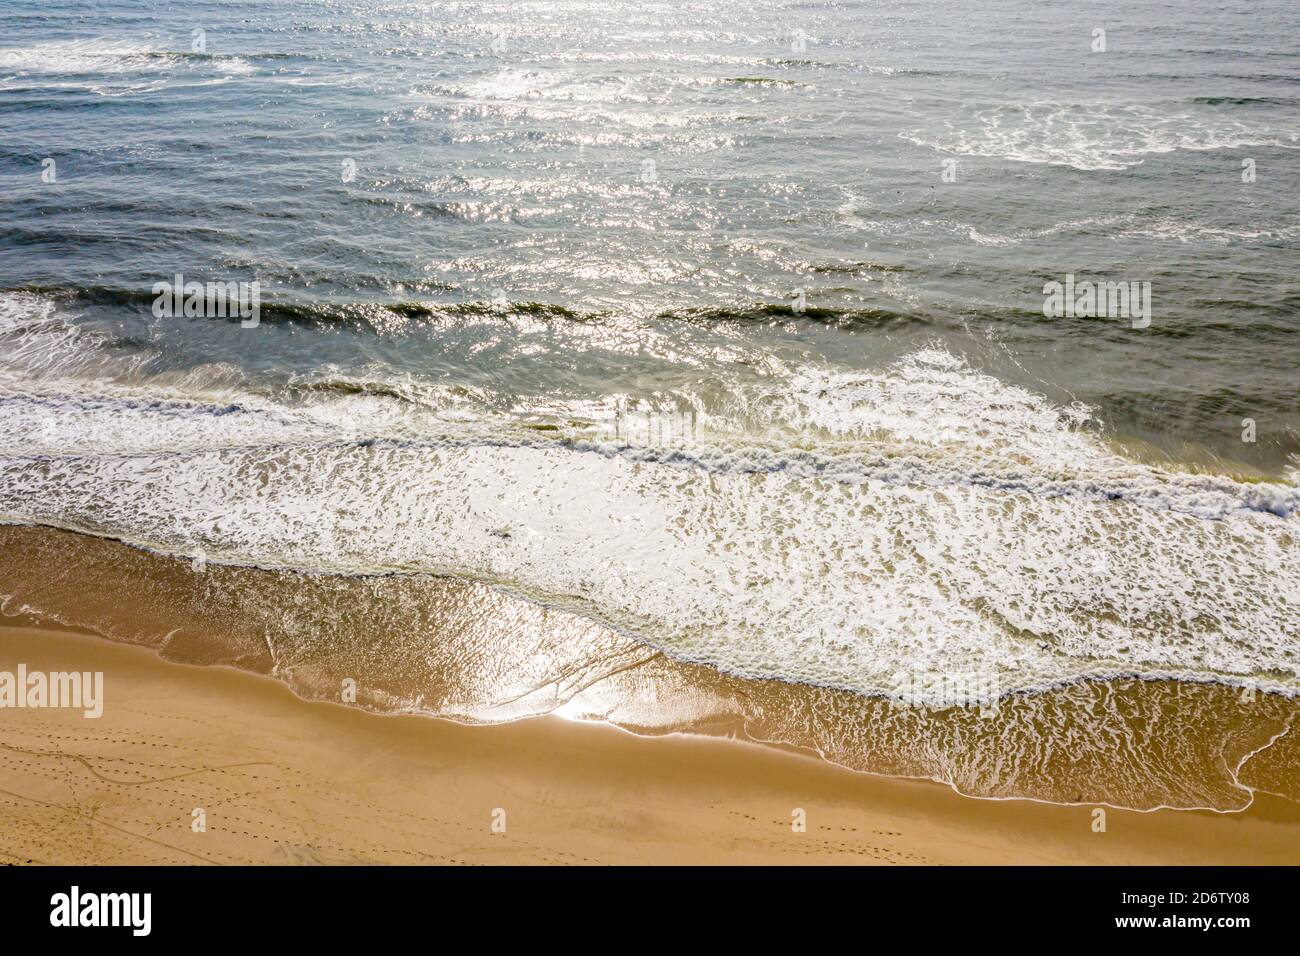 Immagine aerea di Amagansett e della spiaggia dell'oceano Foto Stock